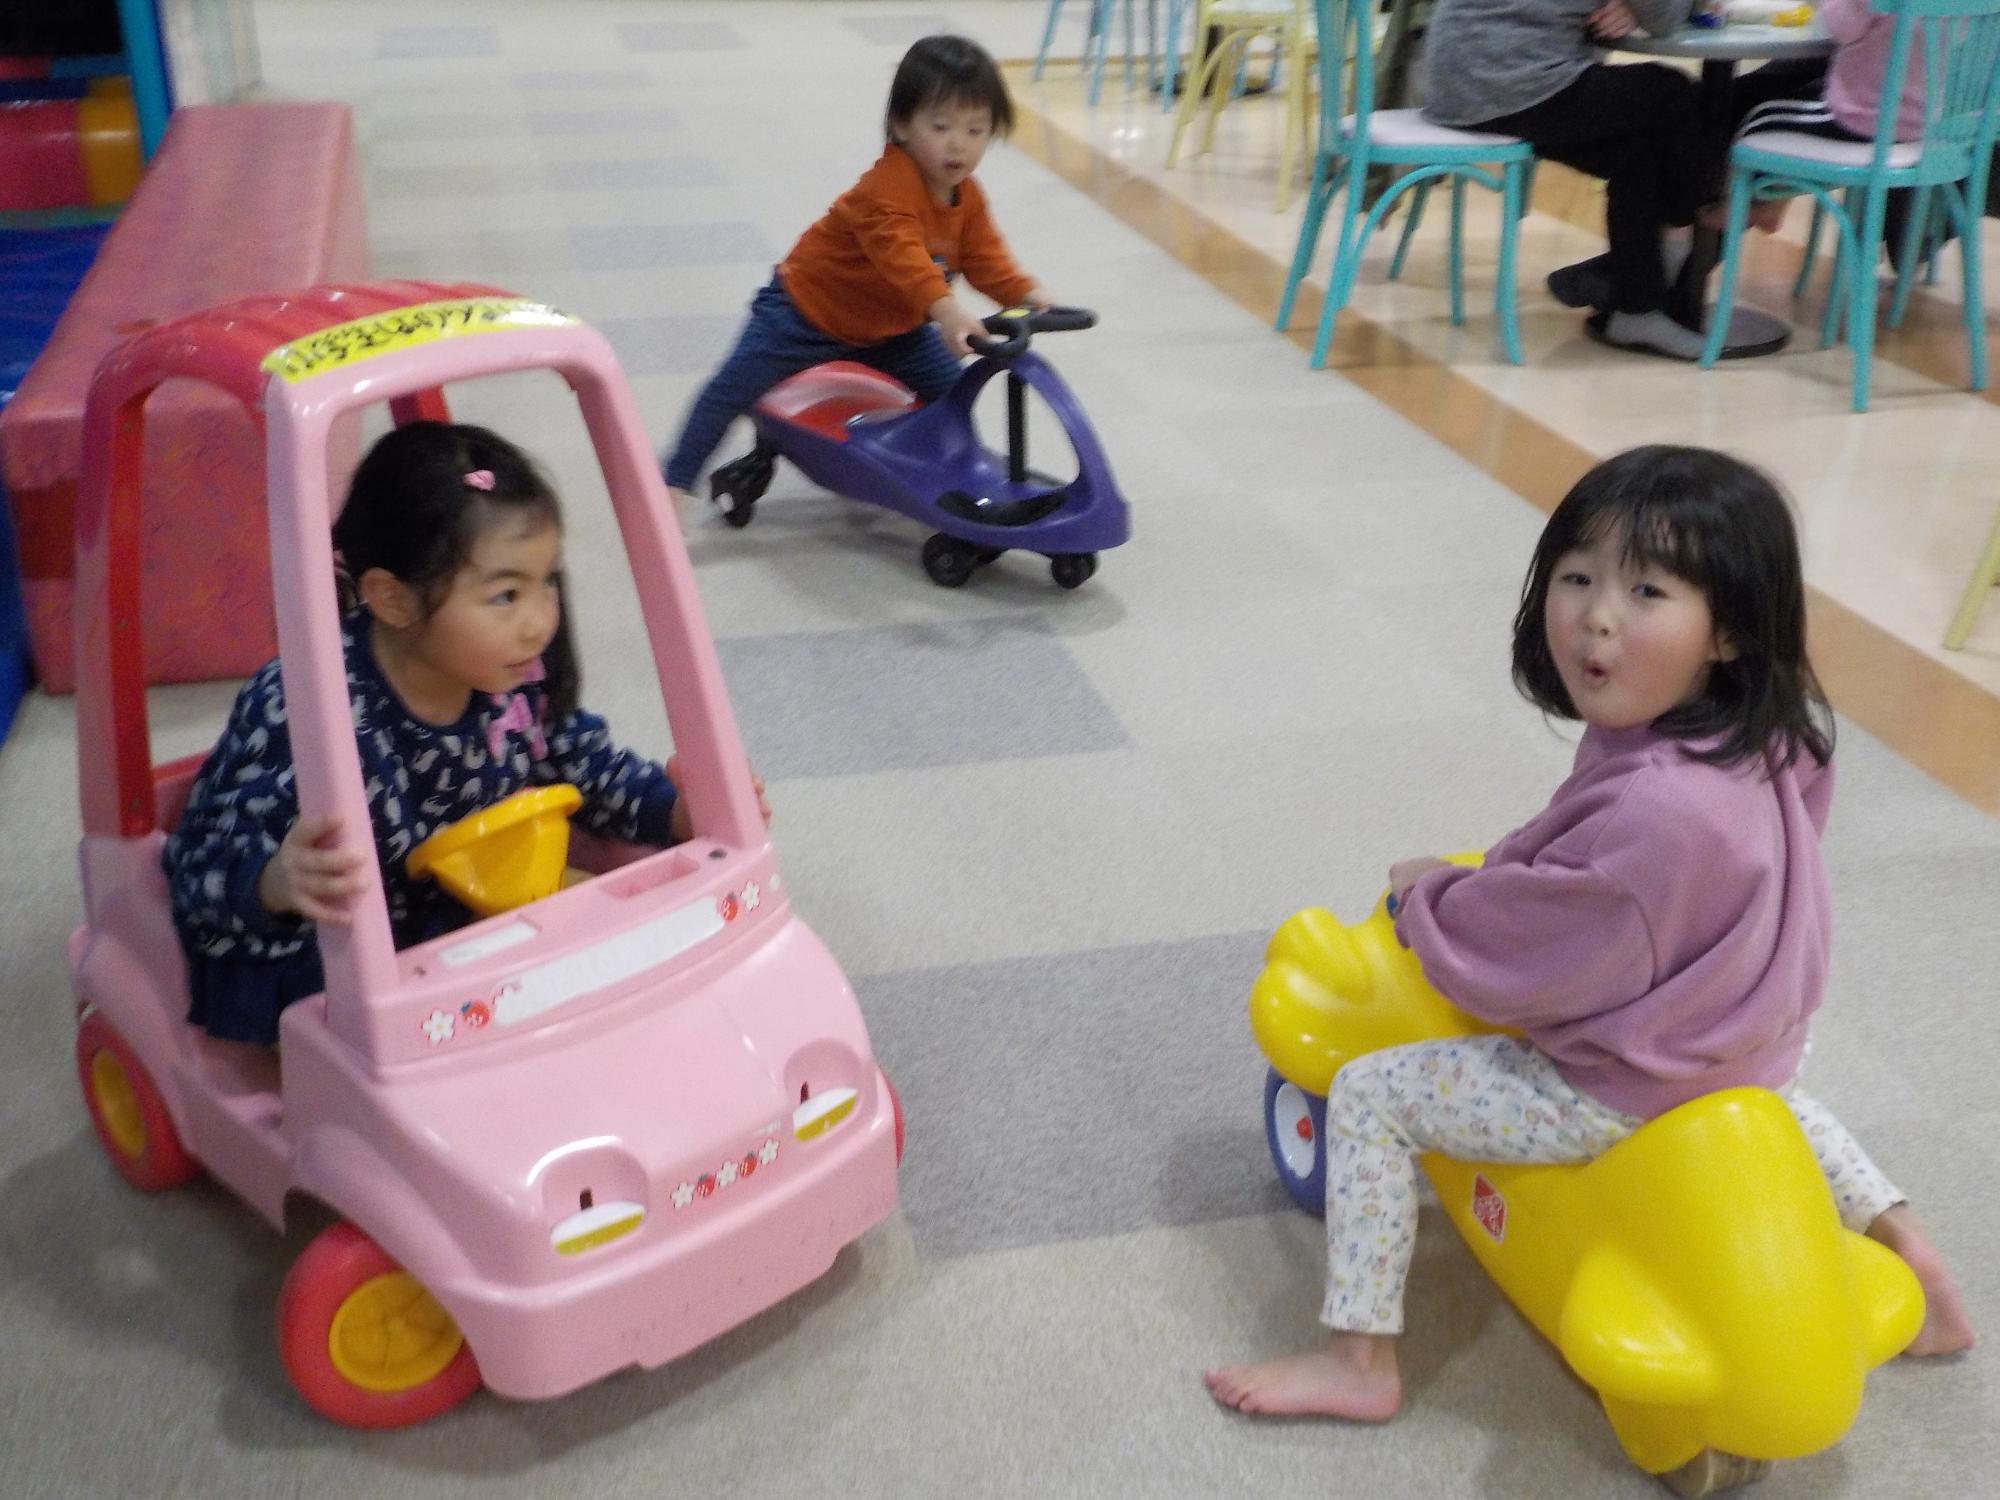 乗り物の遊具に乗り、遊ぶ2人の女の子の後ろで、乗り物の遊具に乗ろうとする男の子